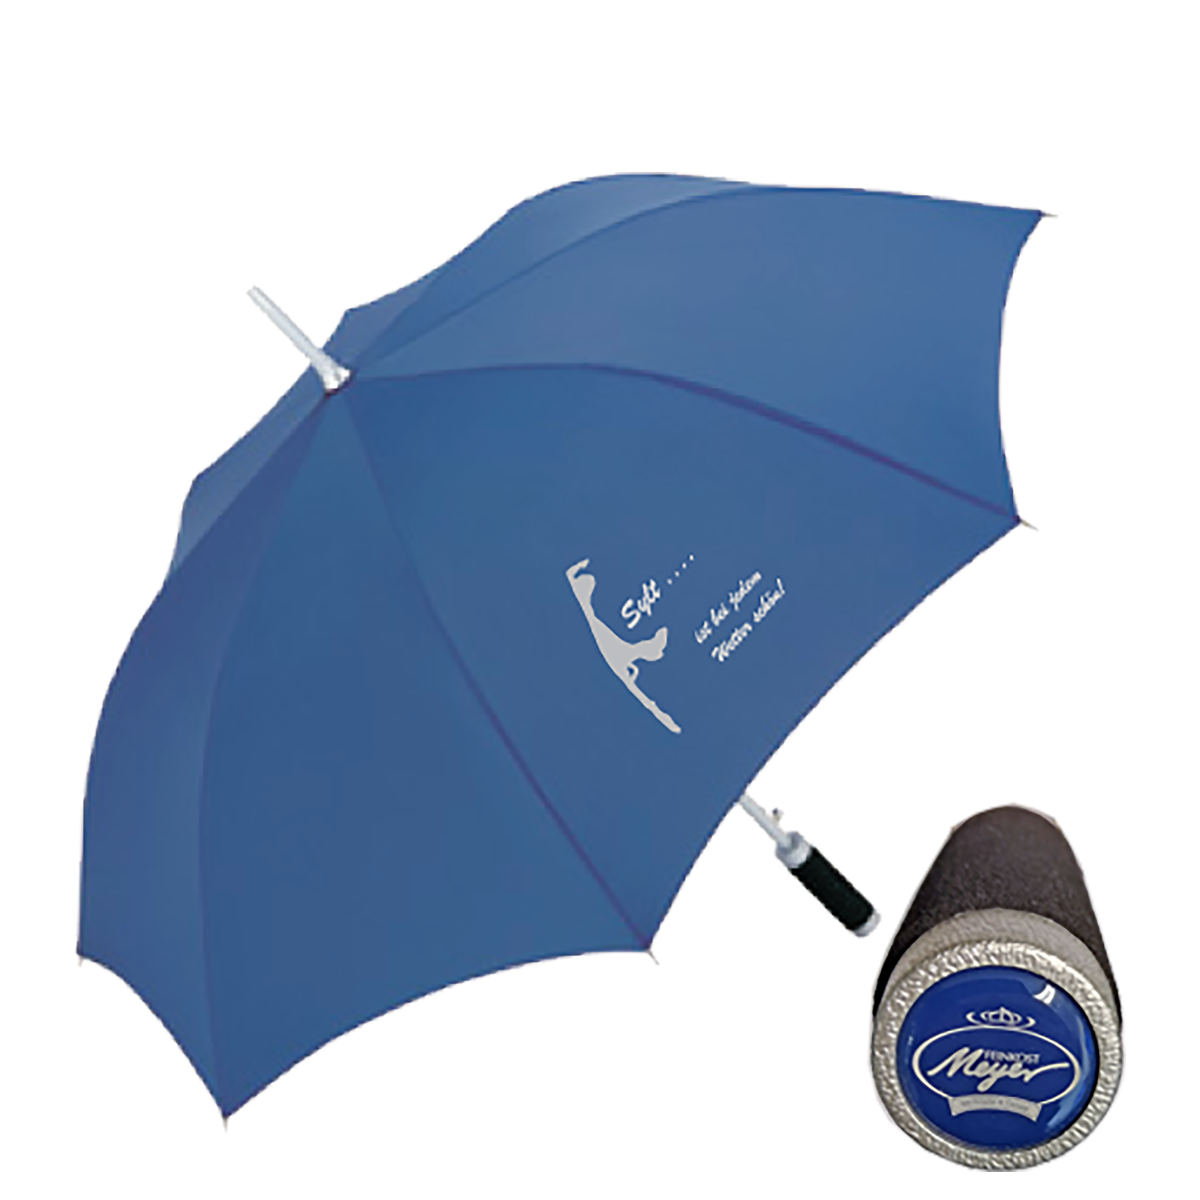 Regen-Schirm »Edition Feinkost Meyer« Blau